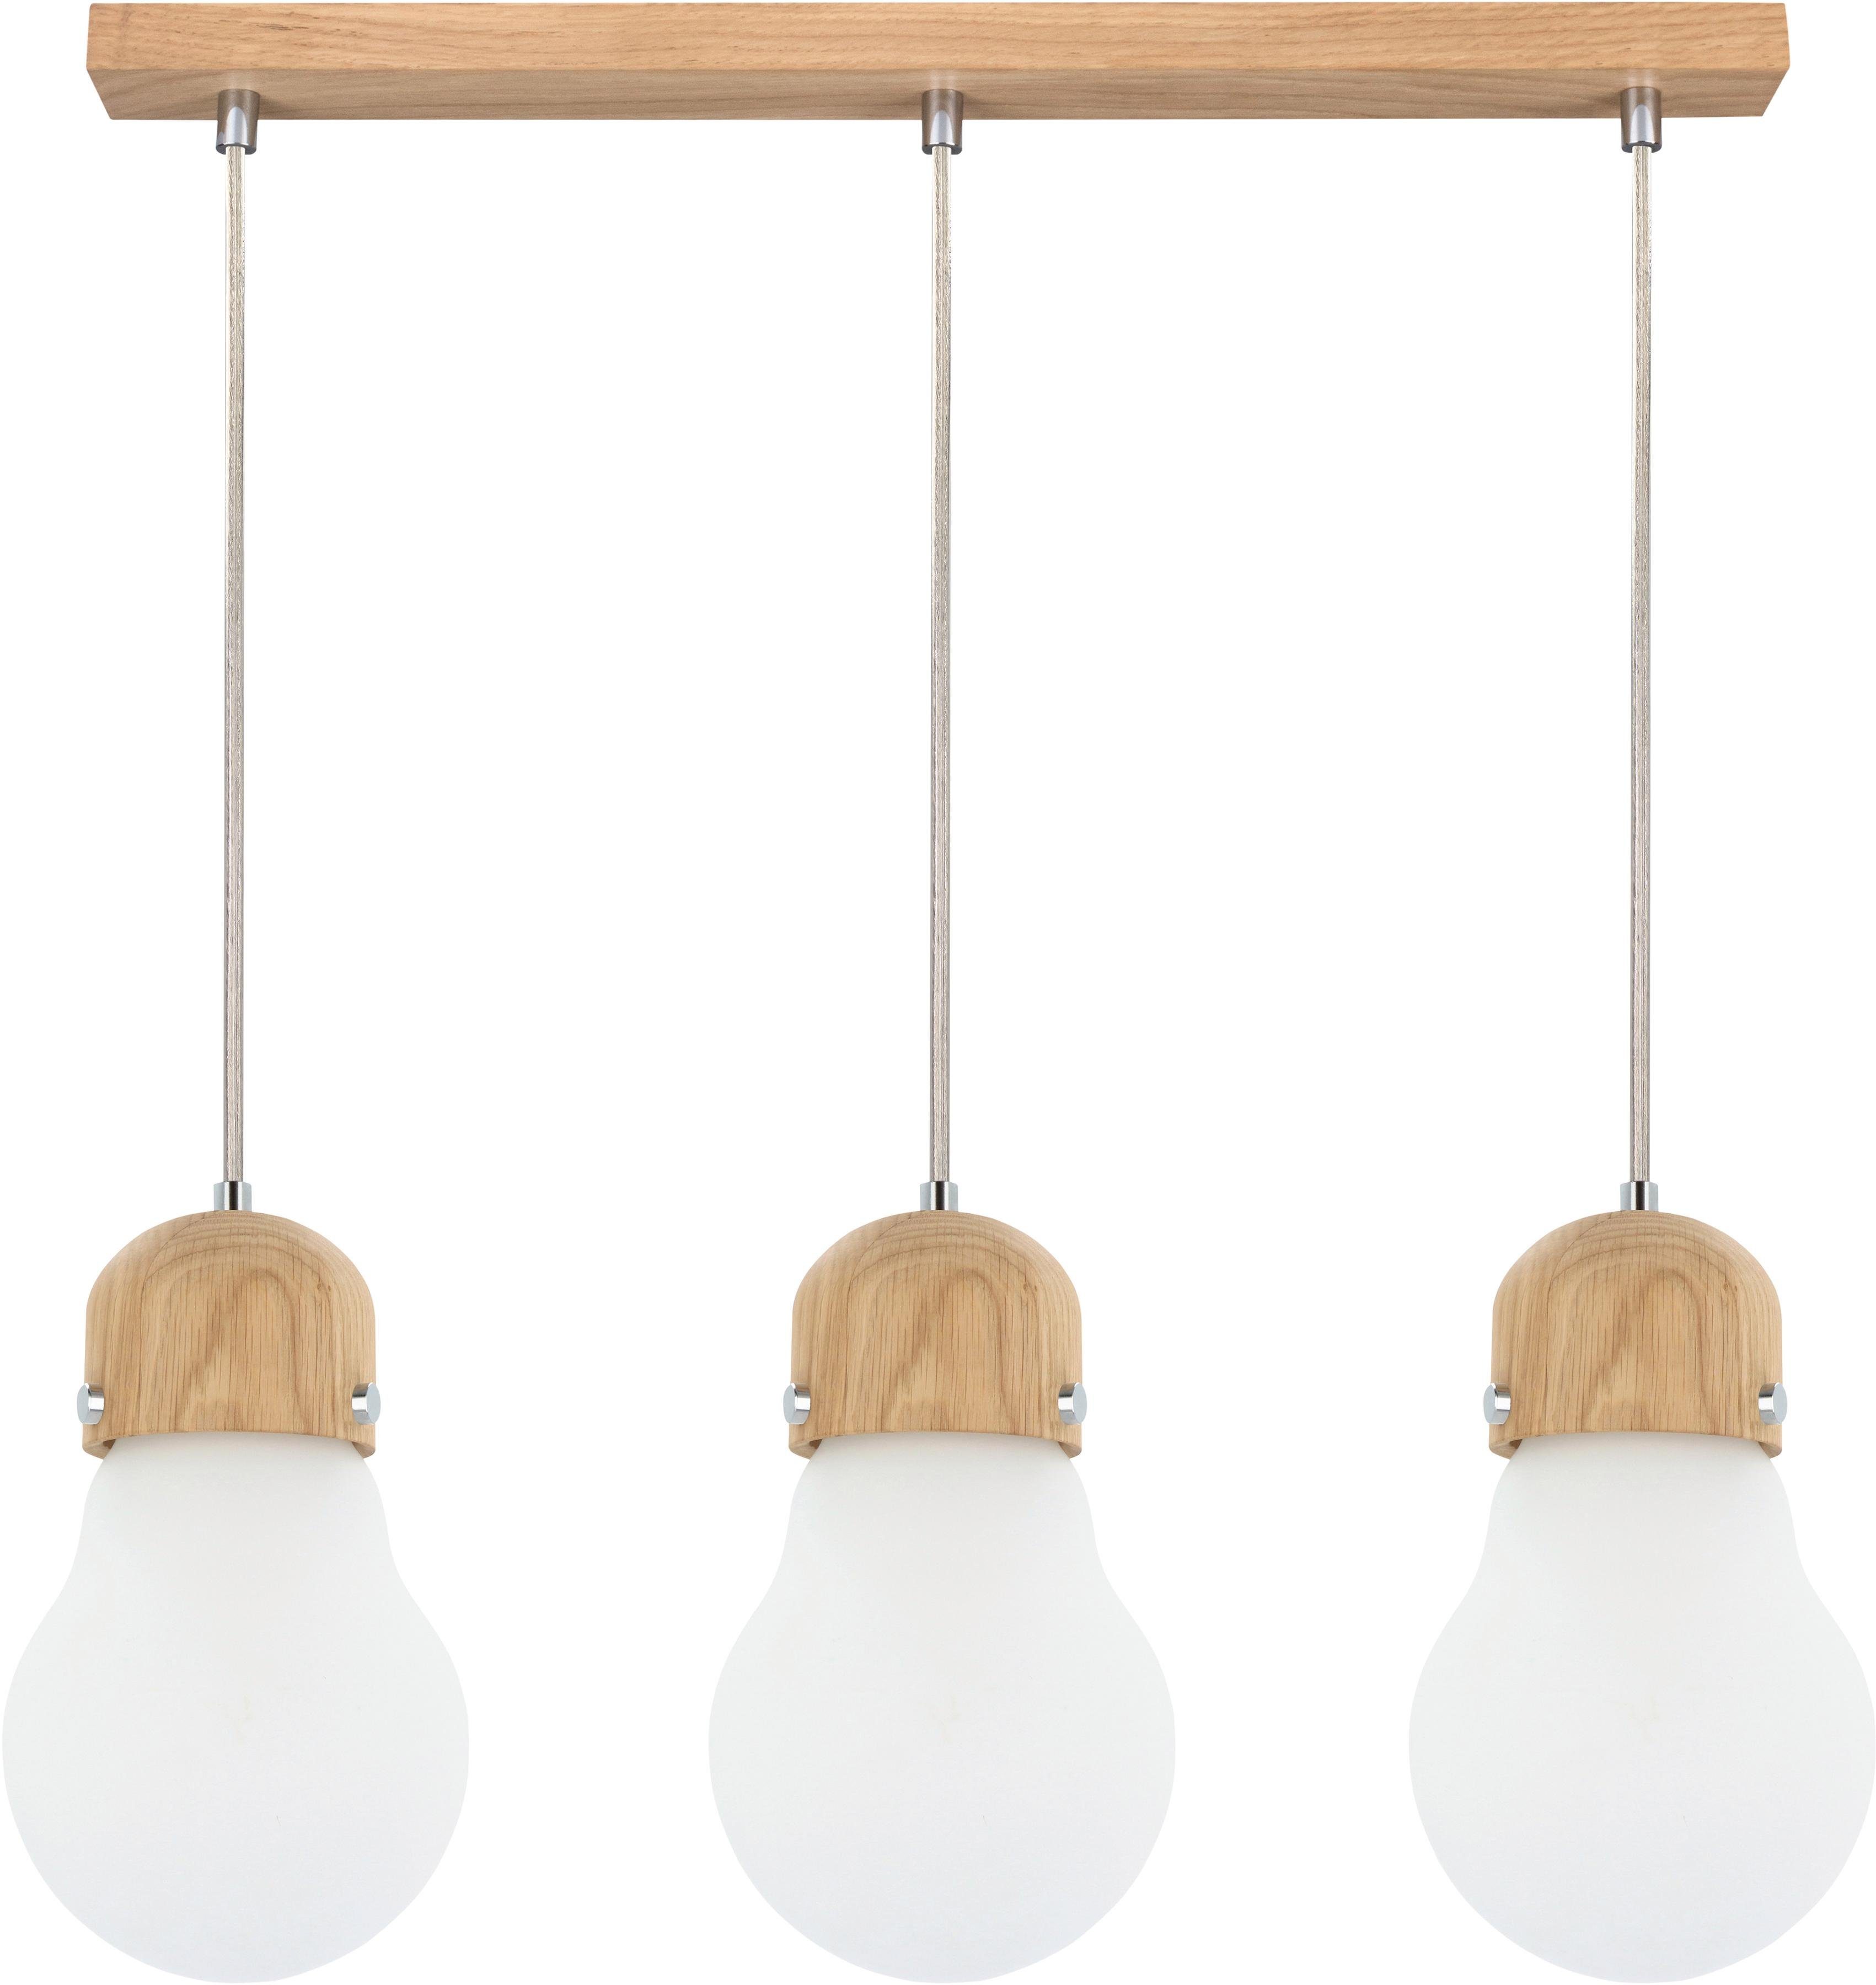 britop lighting hanglamp bulb wood hanglamp, natuurproduct van eikenhout, kapjes van glas, in te korten wit